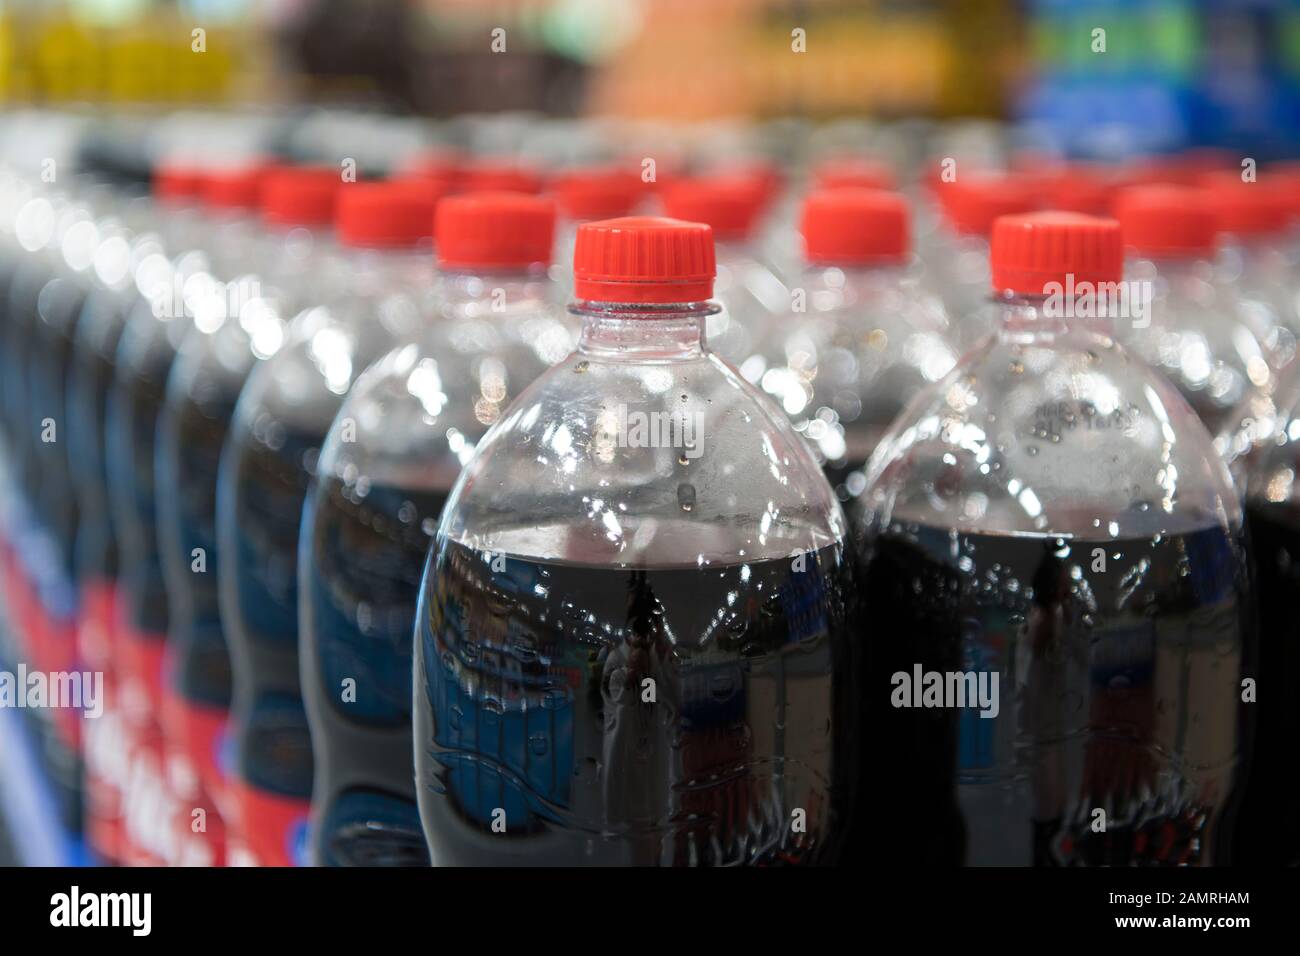 Fizzy zucchero bevande in vendita in bottiglie di plastica in un supermercato del Regno Unito. Foto Stock